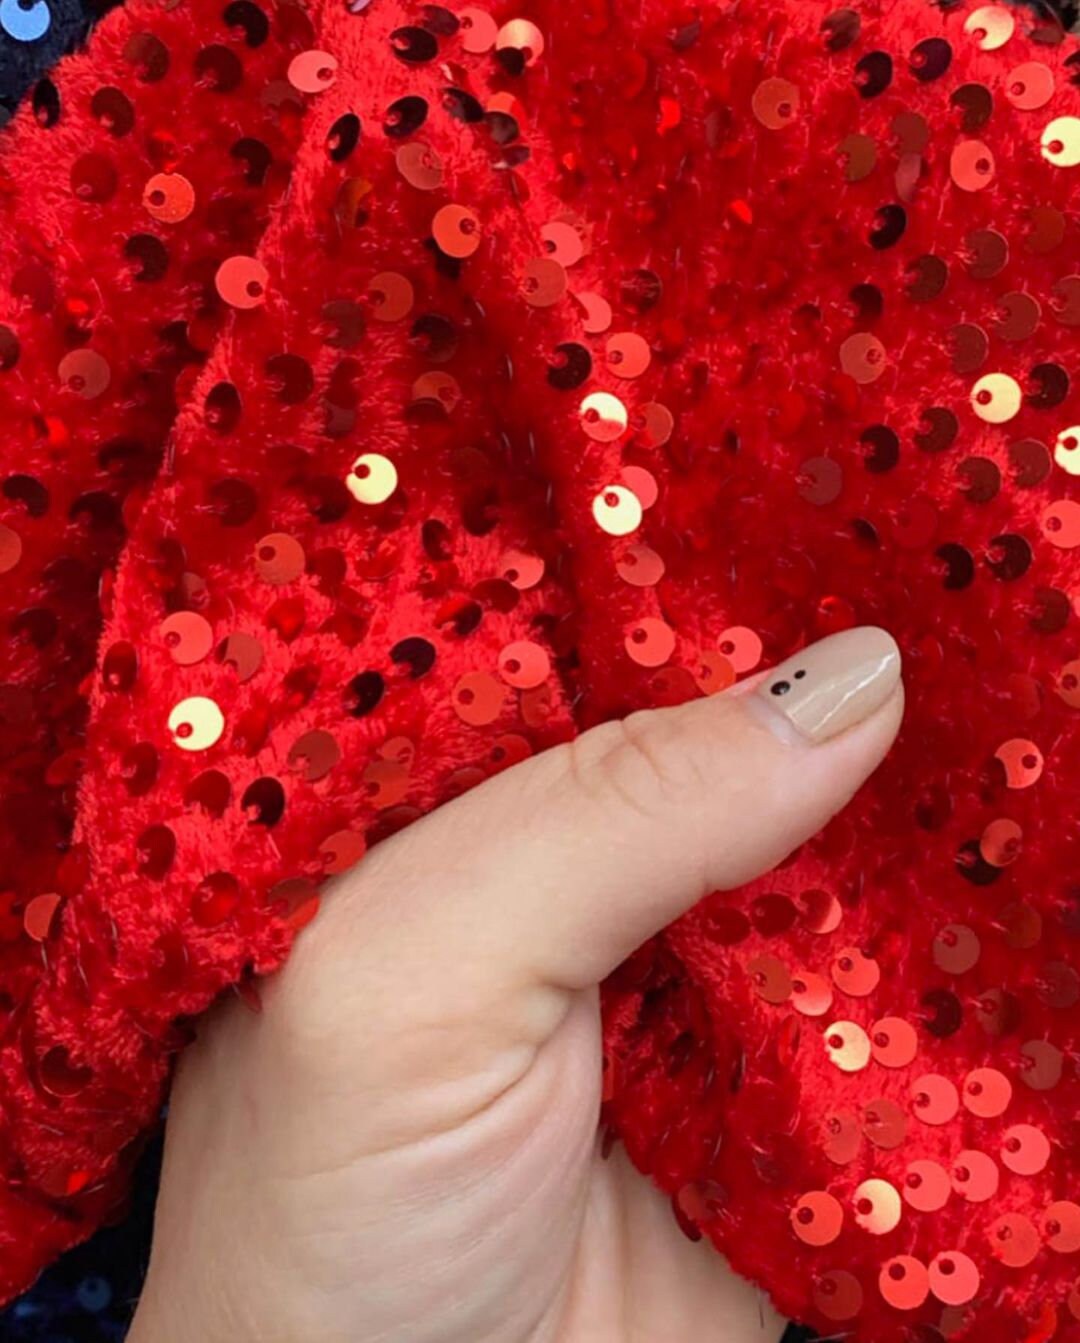 通用 Red Sequin Fabric by The Yard Flip Sequin Fabric for Dress Glitter Fabric for Sewing Mesh Sequins Material by The Yard Sewing Fabric for Cloths